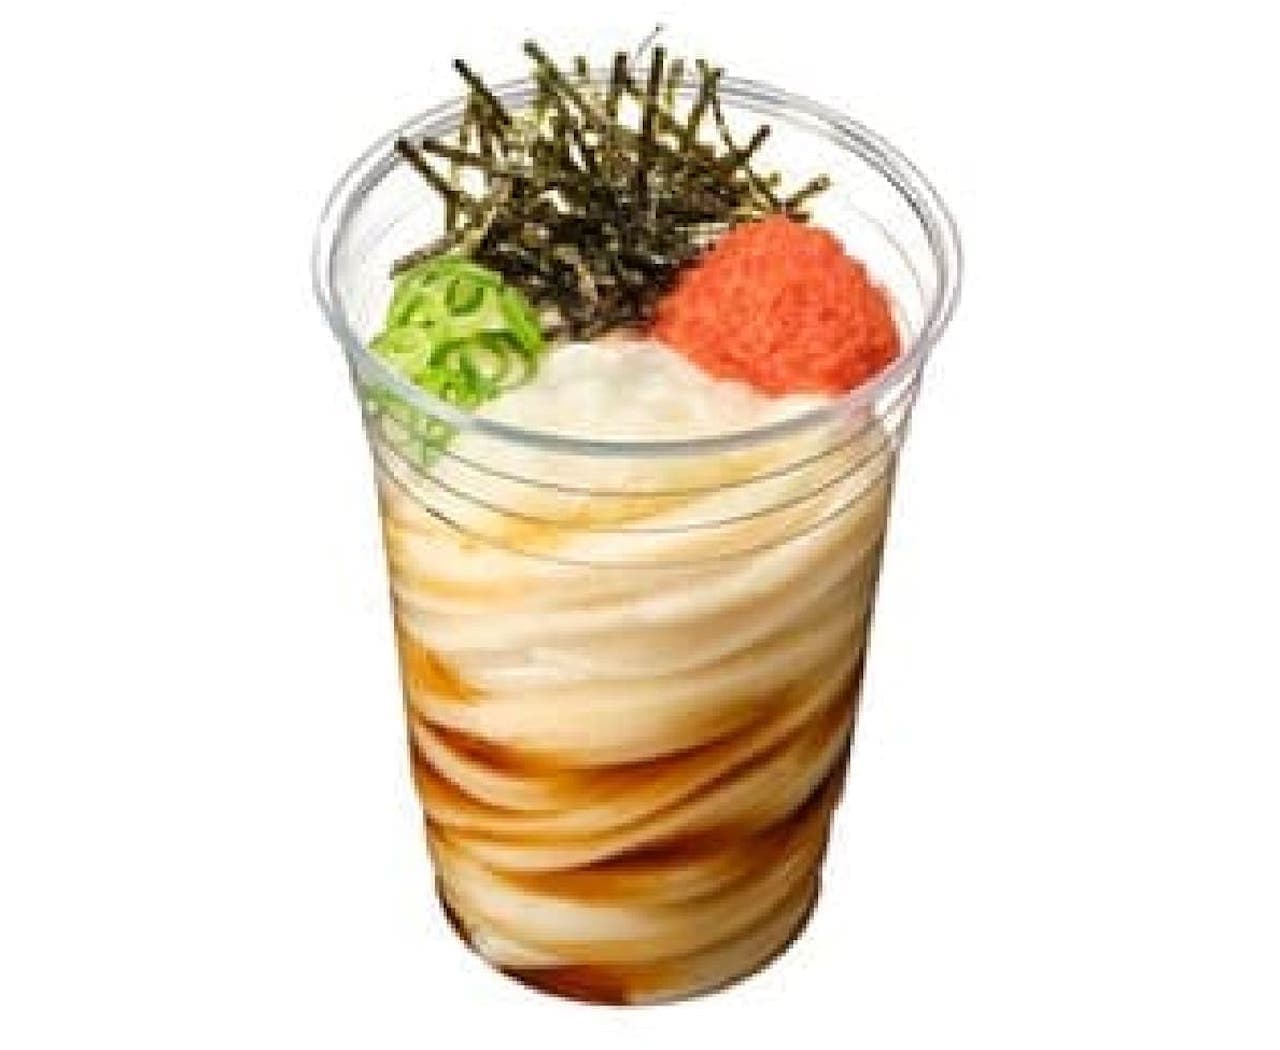 Marugame Shake Udon - cod roe udon 390 yen